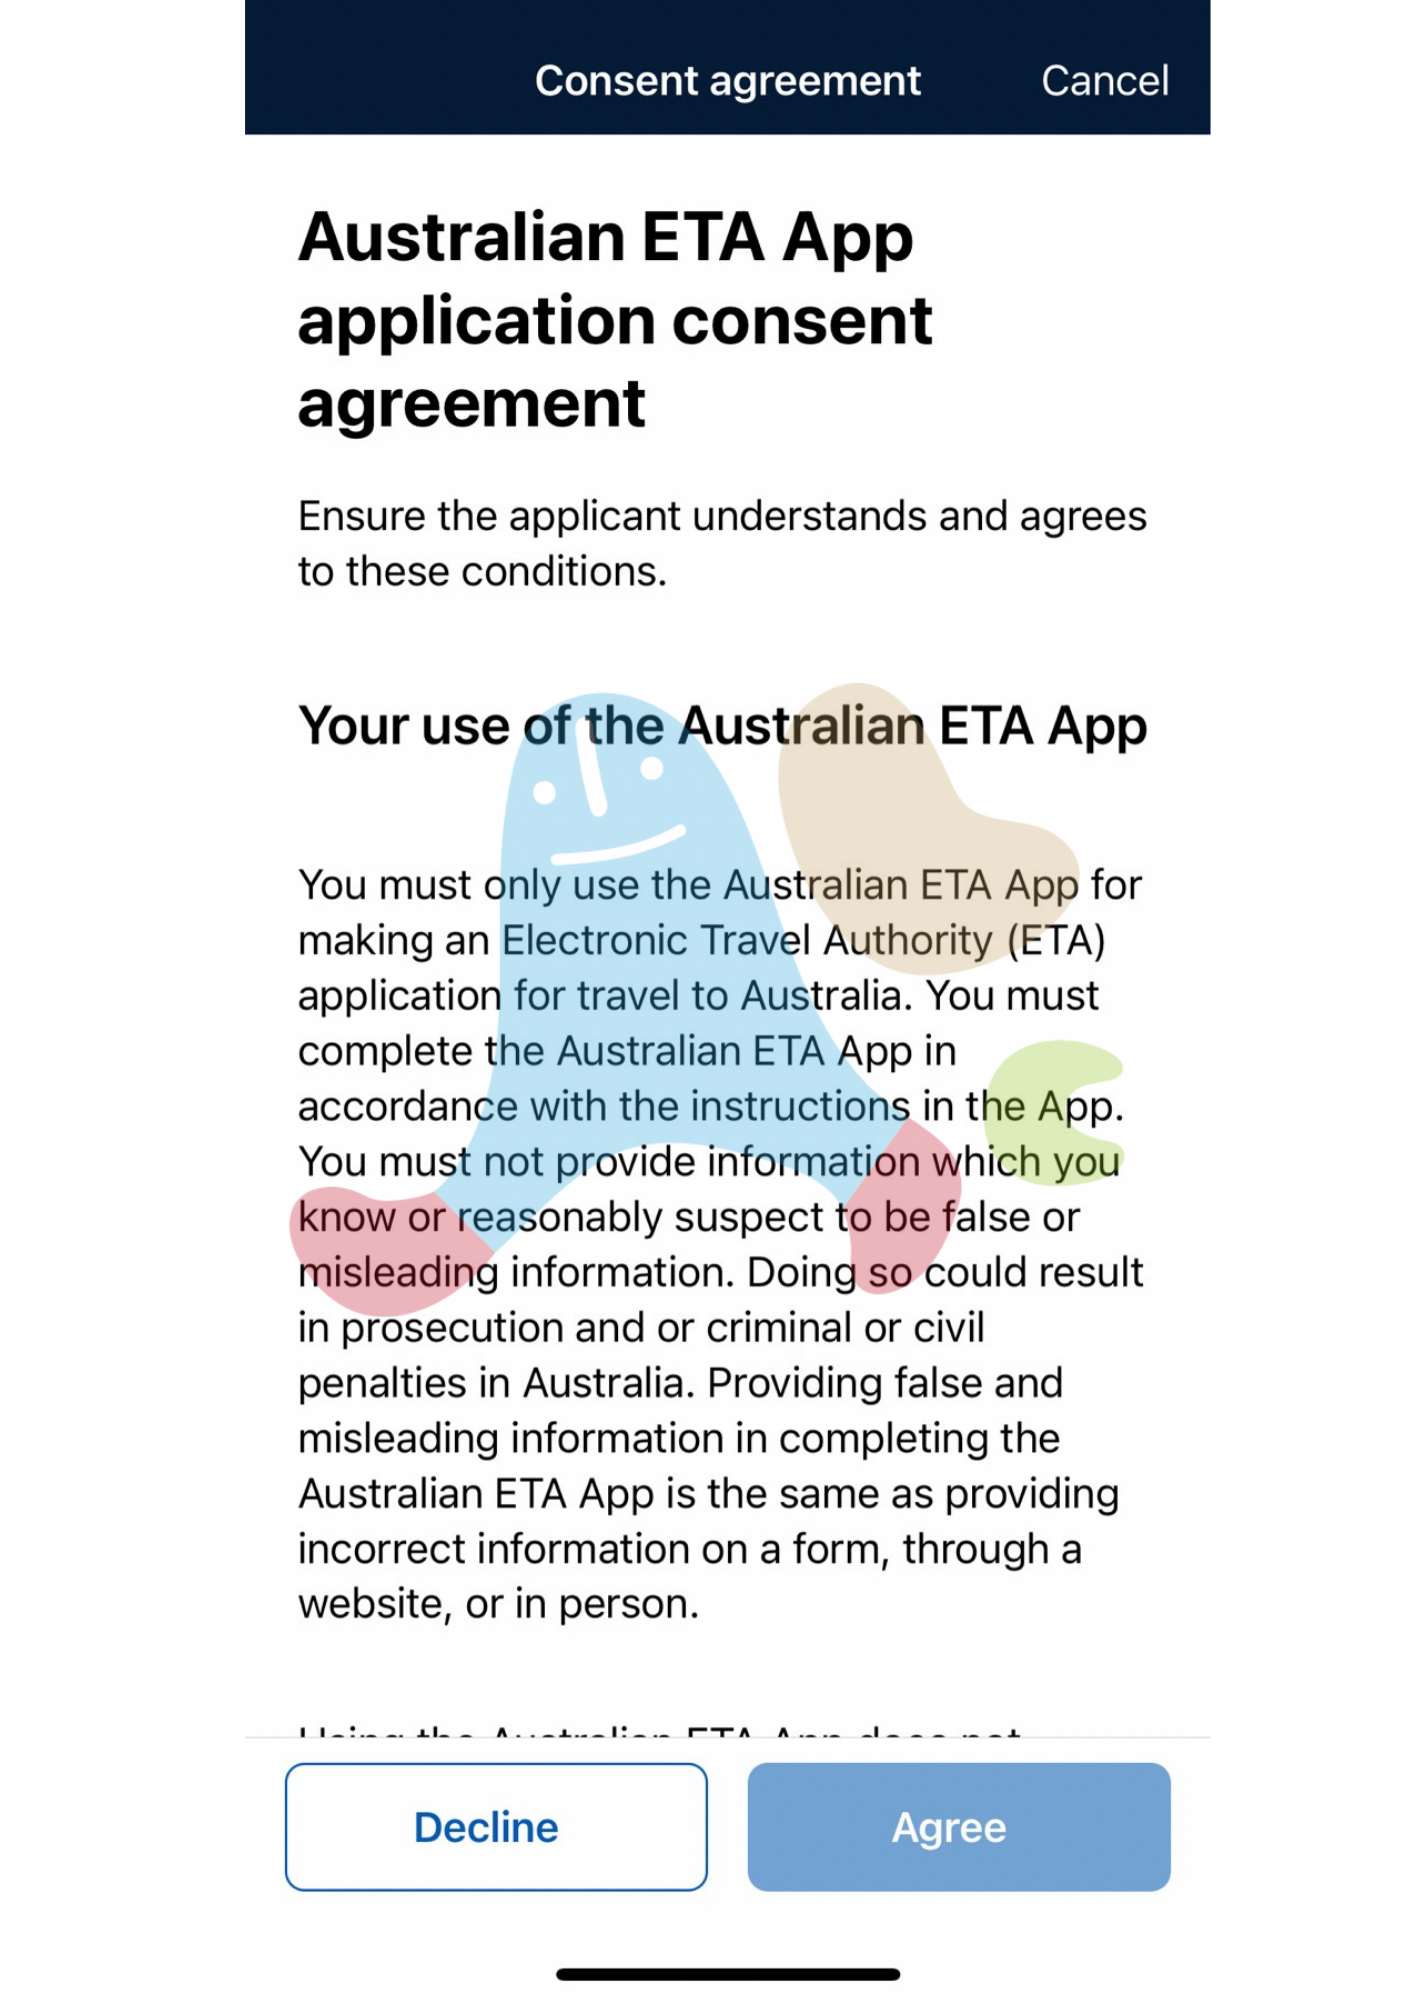 澳洲旅遊簽證AustraliaETA app-申請同意書協定說明